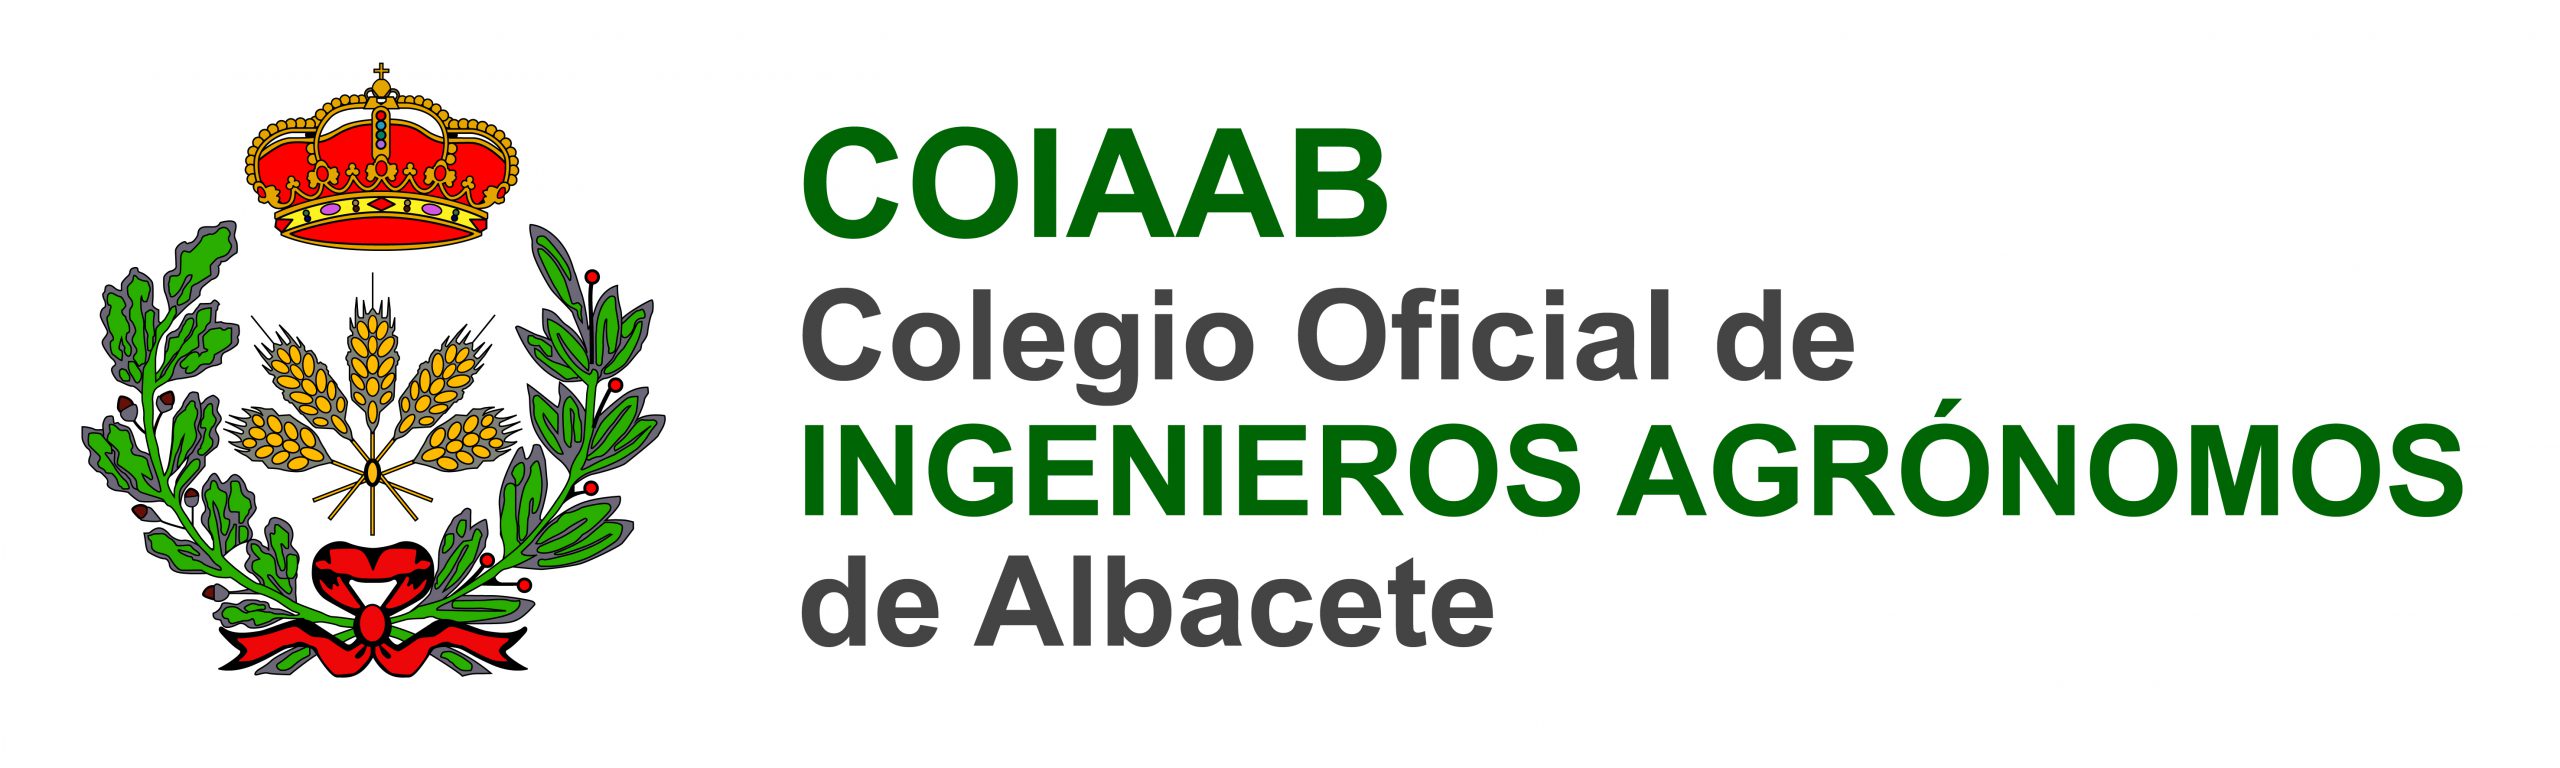 Colegio Oficial de Ingenieros Agrónomos de Albacete